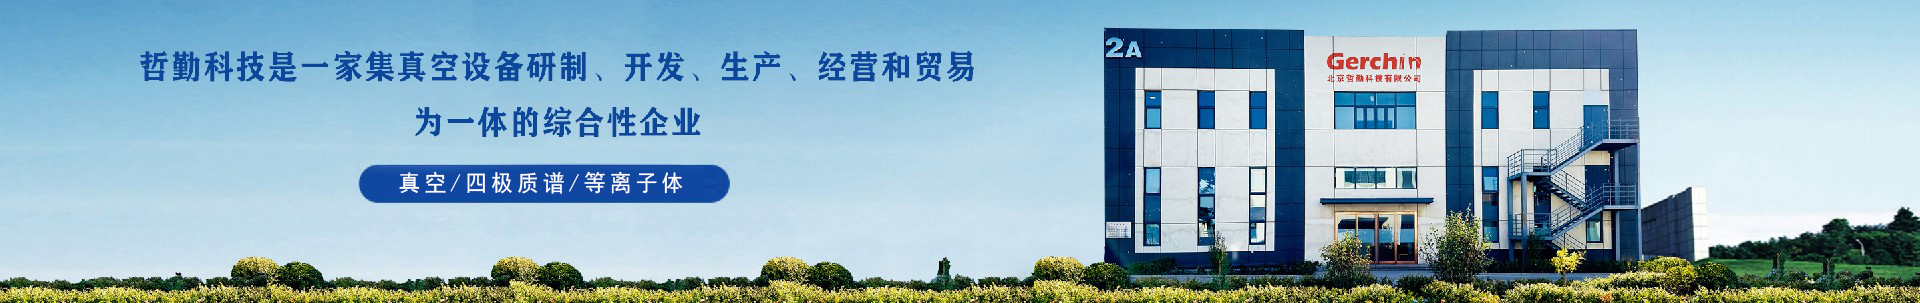 质谱类产品-北京哲勤科技有限公司